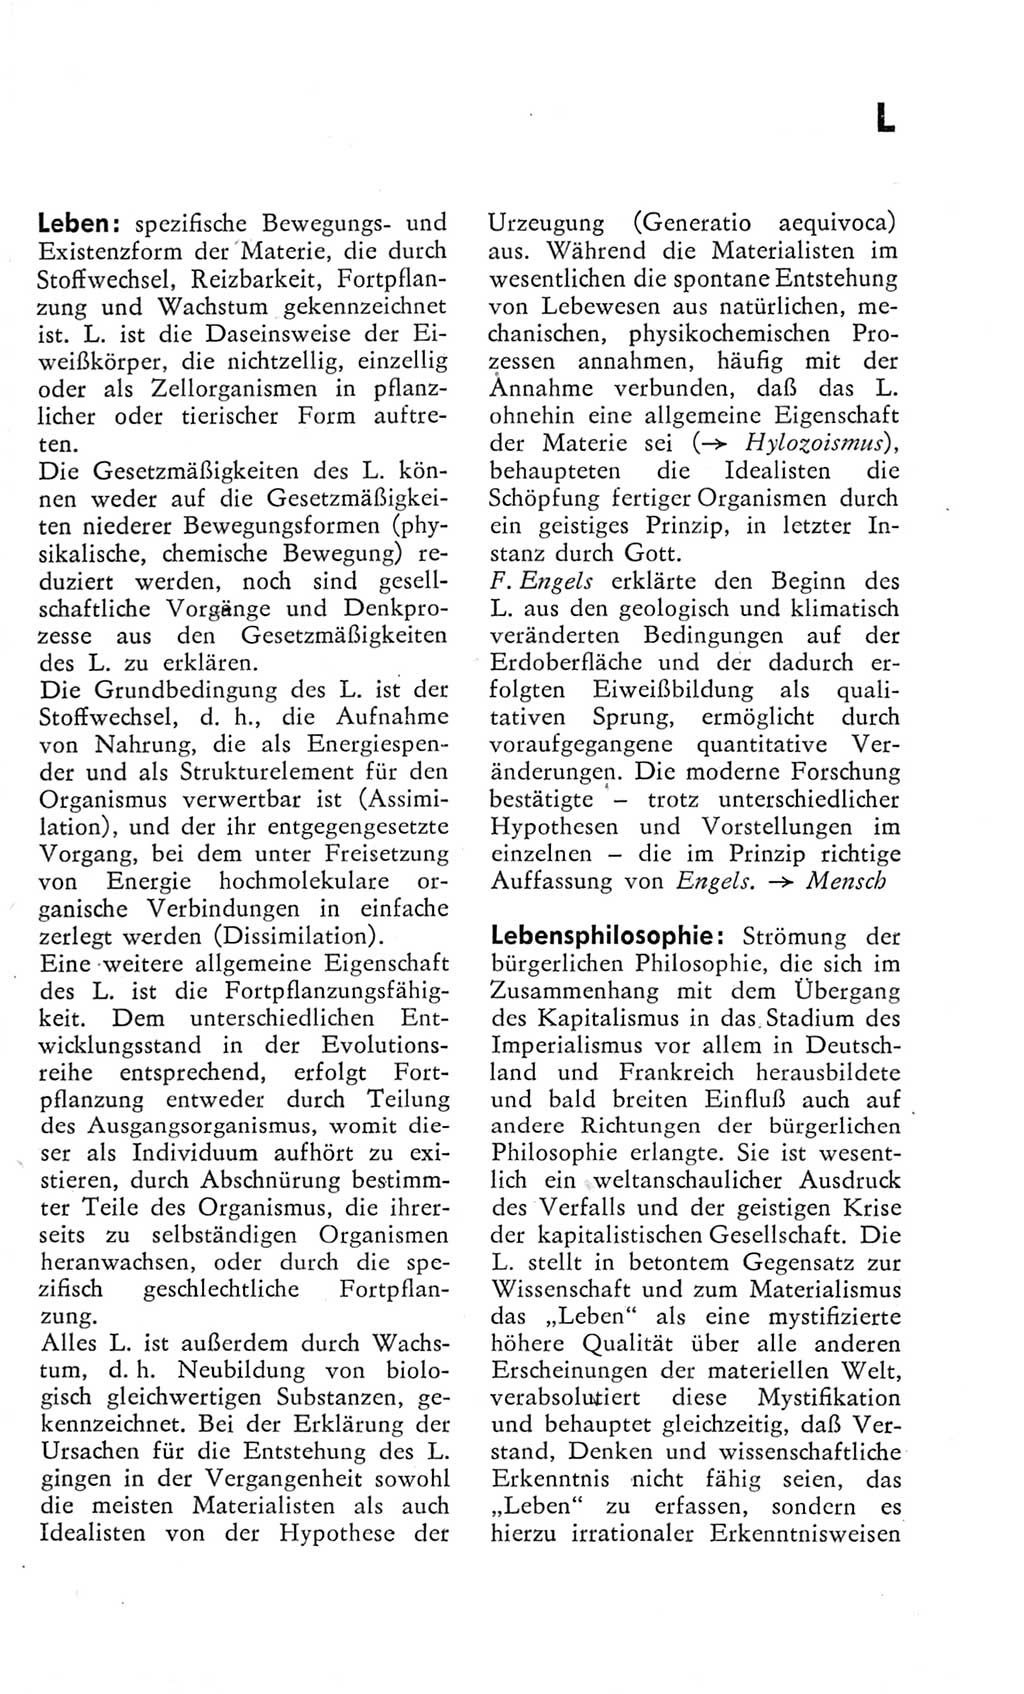 Kleines Wörterbuch der marxistisch-leninistischen Philosophie [Deutsche Demokratische Republik (DDR)] 1975, Seite 169 (Kl. Wb. ML Phil. DDR 1975, S. 169)